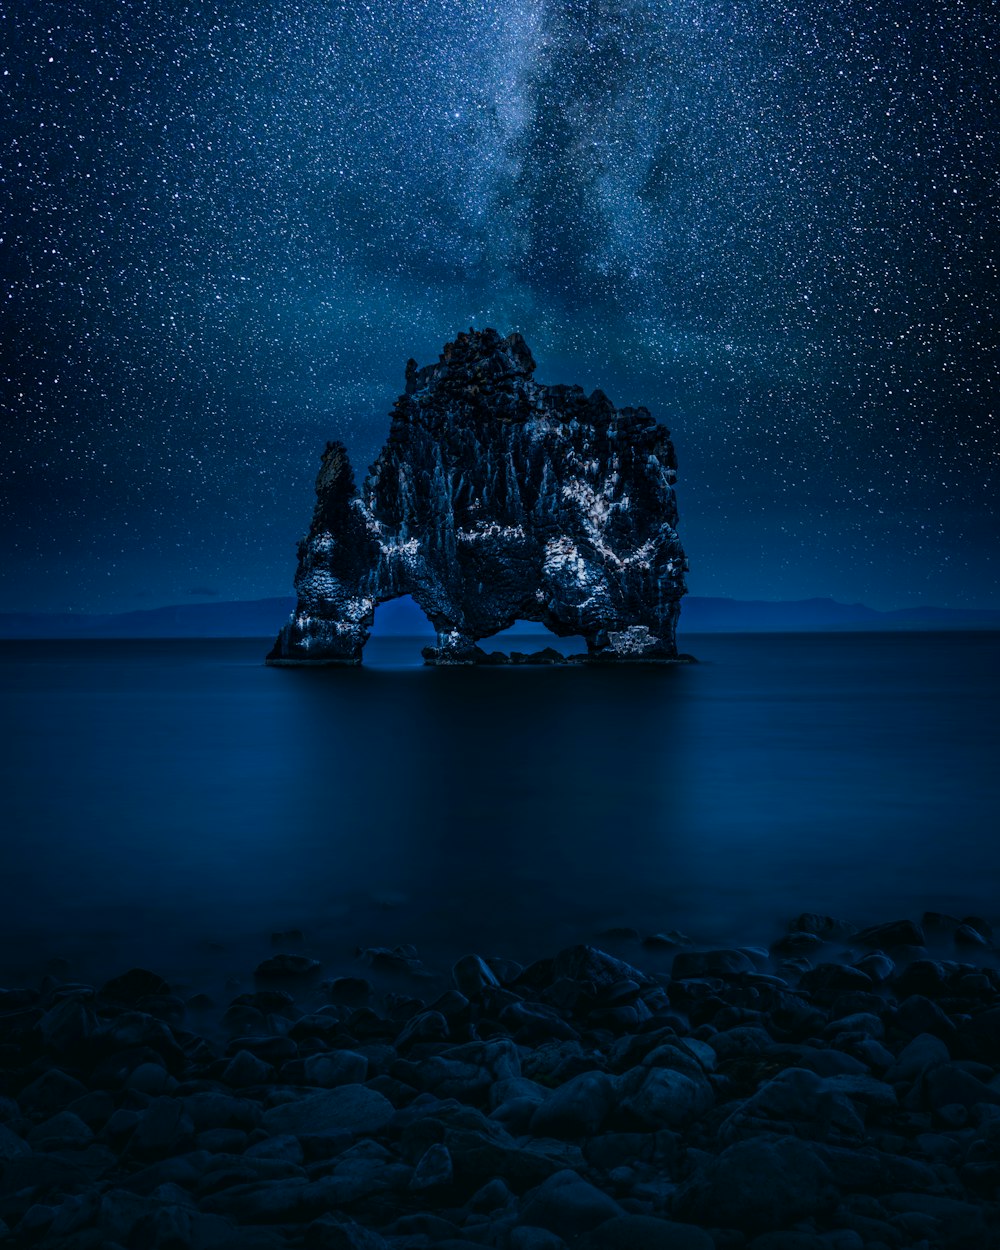 Une formation rocheuse au milieu de l’océan sous un ciel nocturne rempli d’étoiles